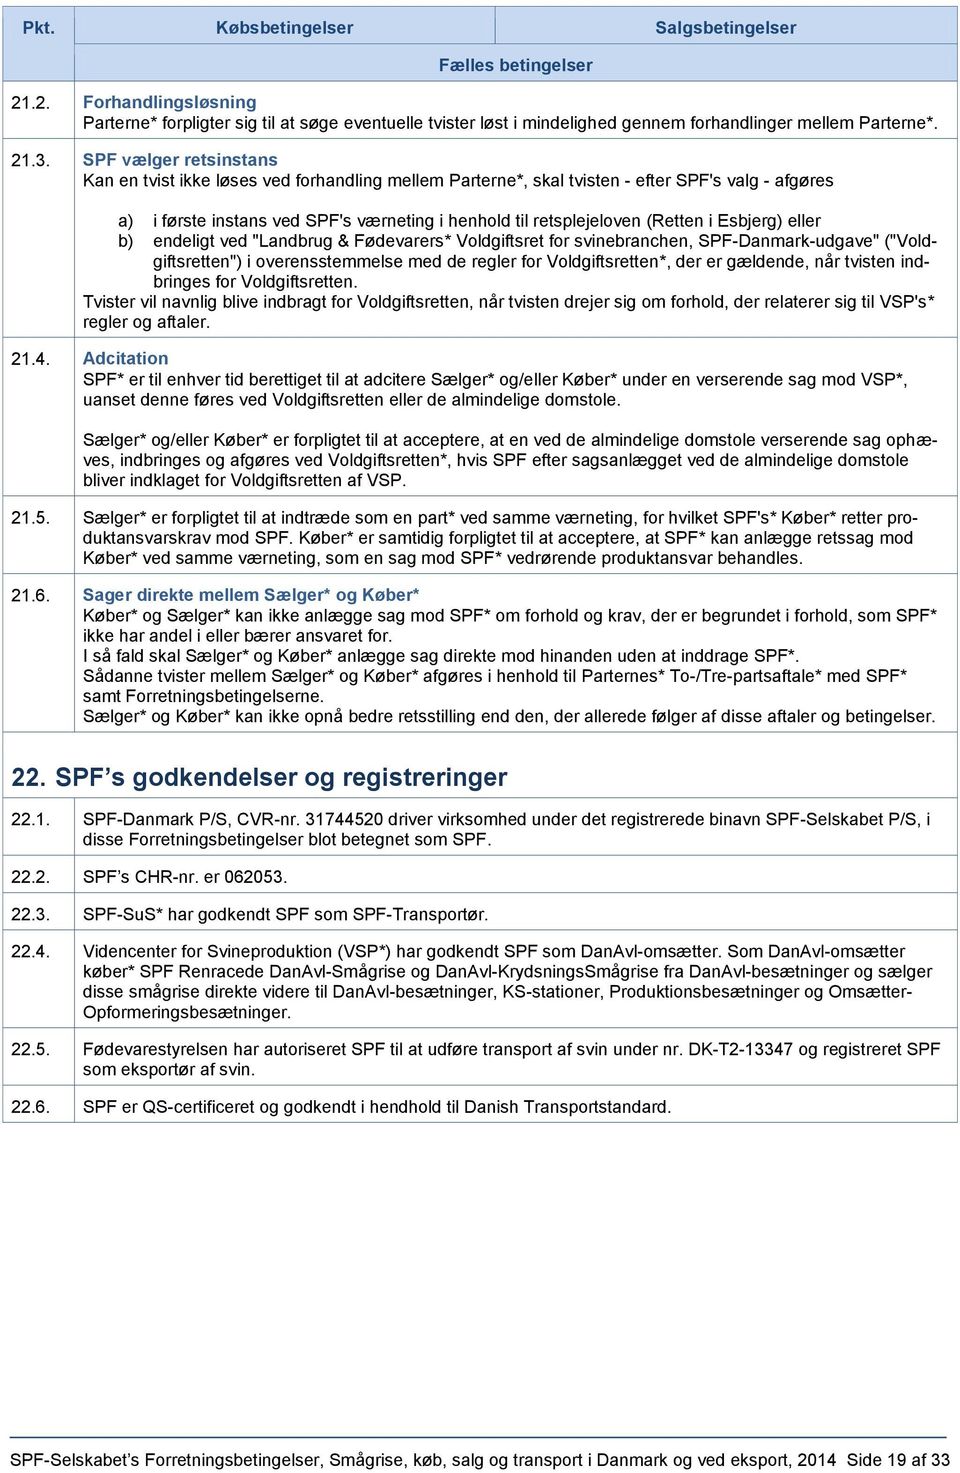 i Esbjerg) eller b) endeligt ved "Landbrug & Fødevarers* Voldgiftsret for svinebranchen, SPF-Danmark-udgave" ("Voldgiftsretten") i overensstemmelse med de regler for Voldgiftsretten*, der er